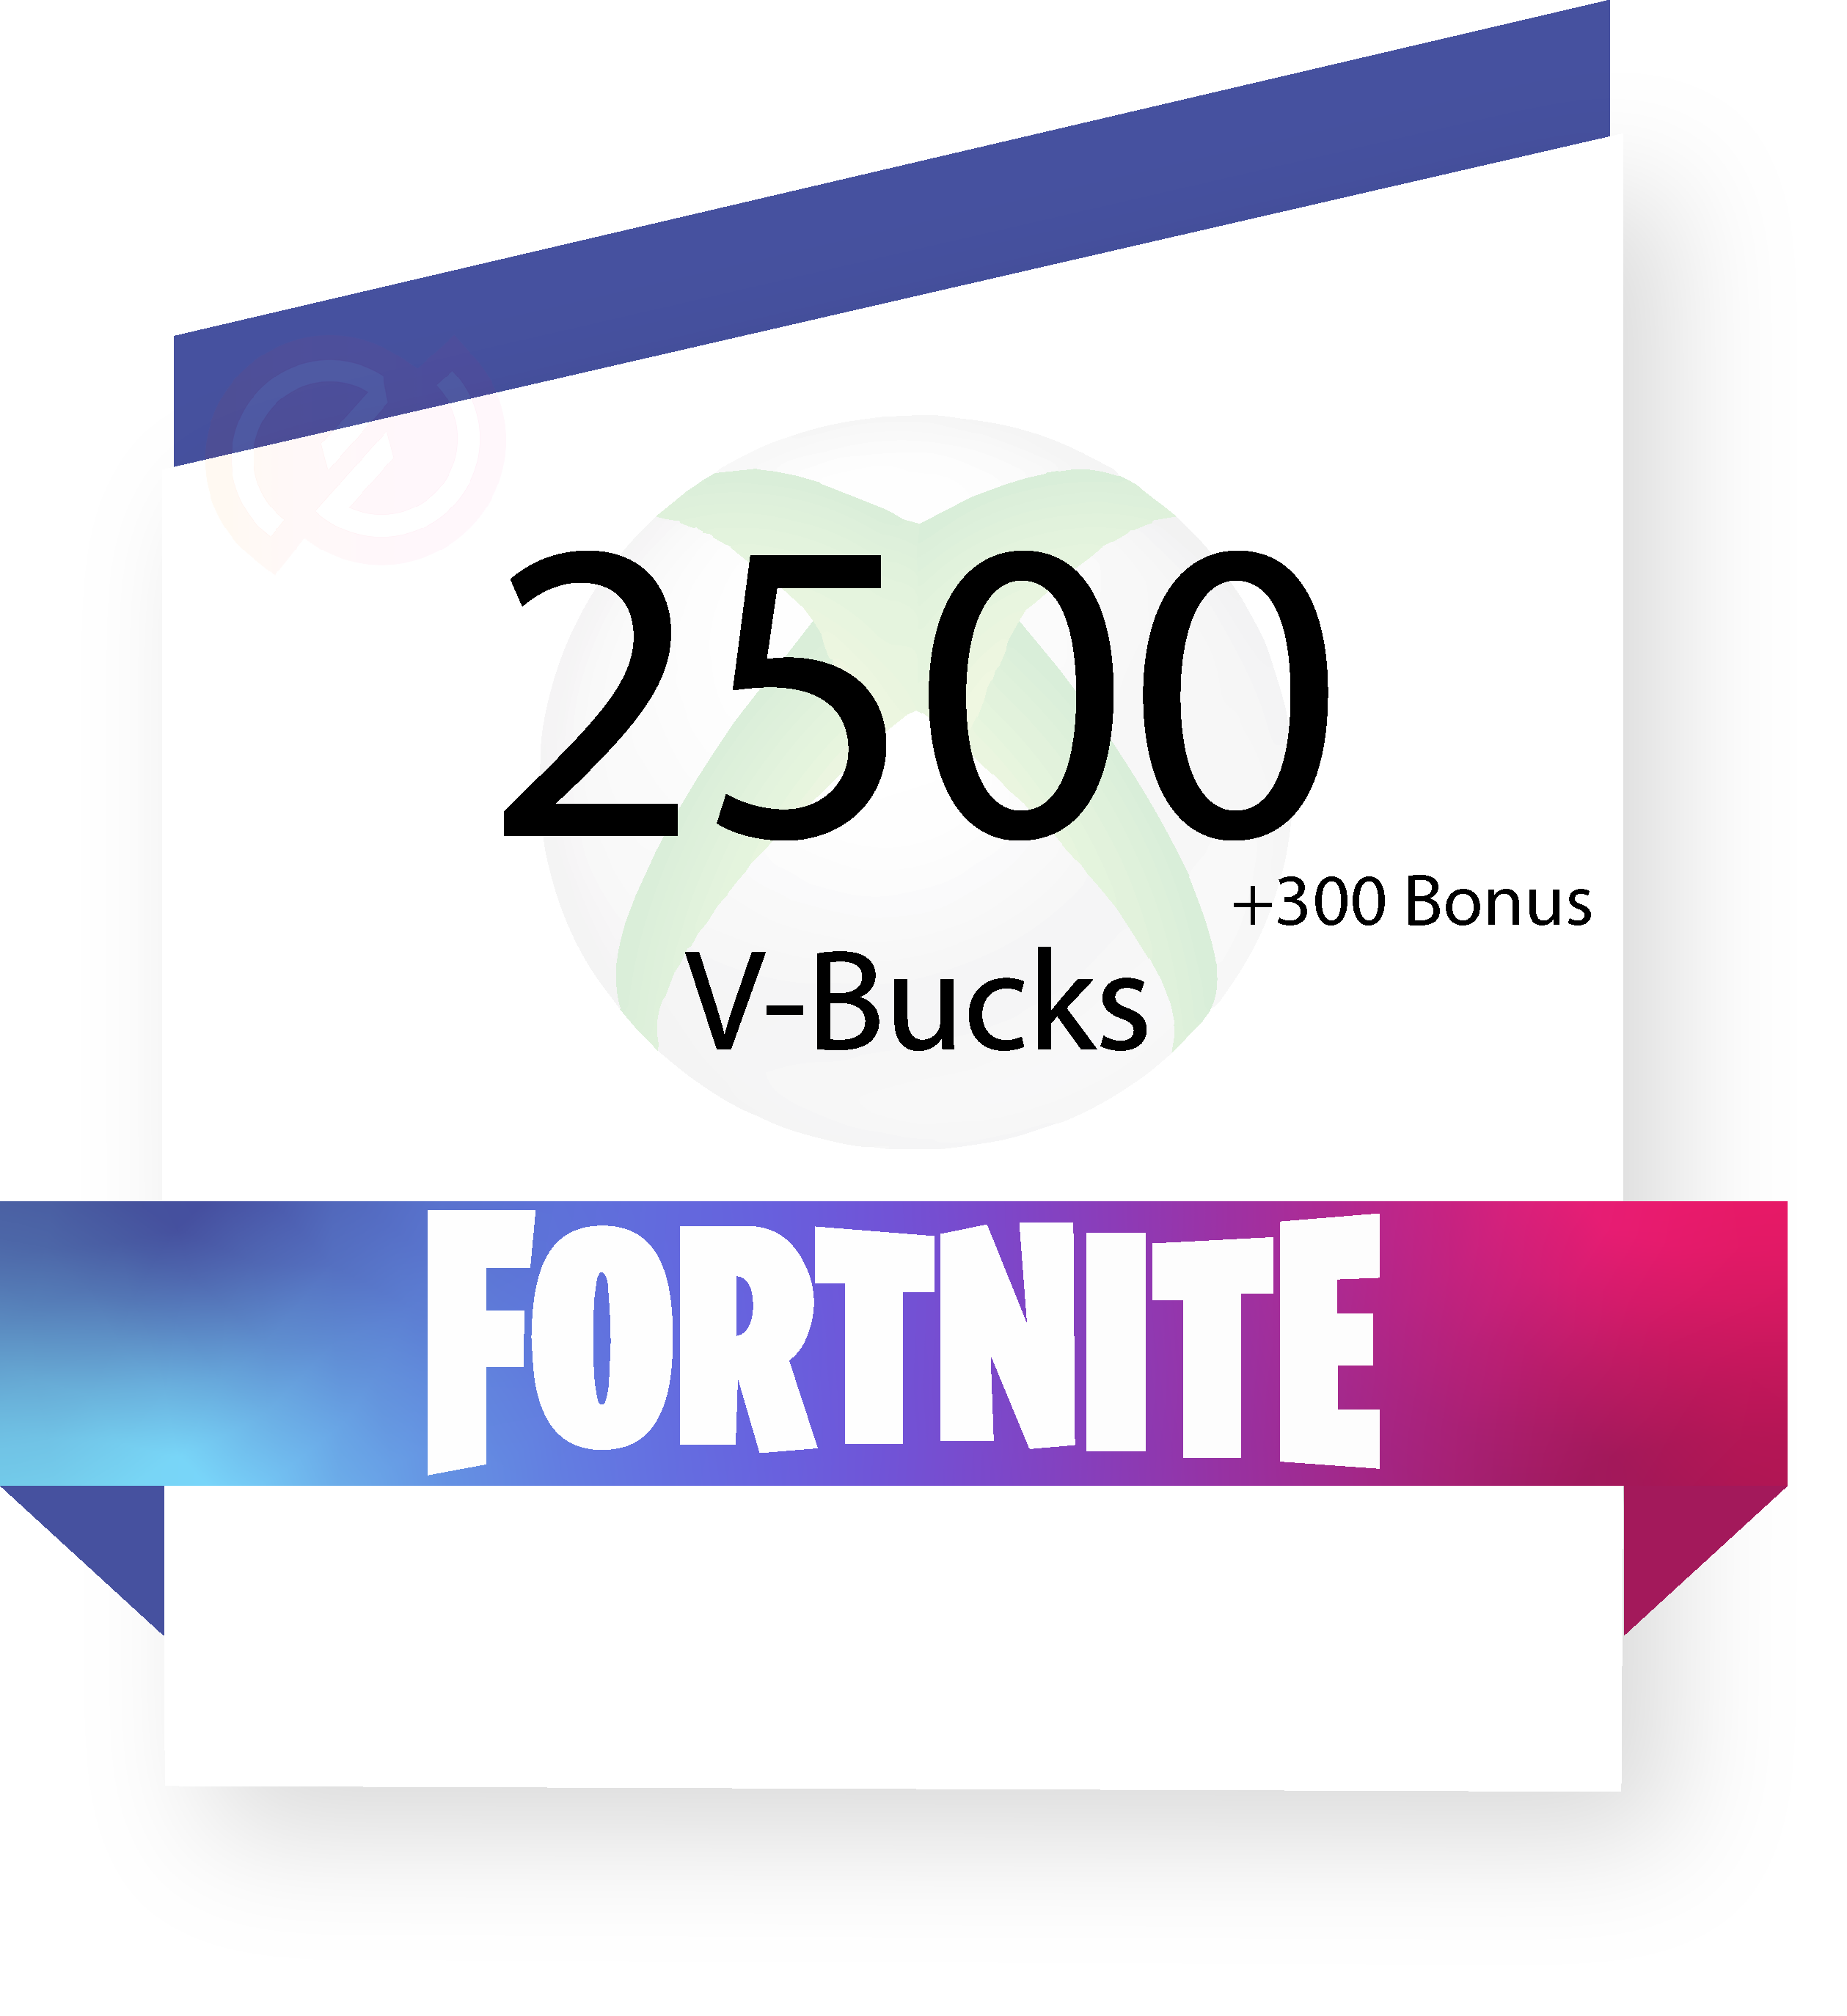 Fortnite - 2500 V-Bucks (+300 Bonus) - Xbox